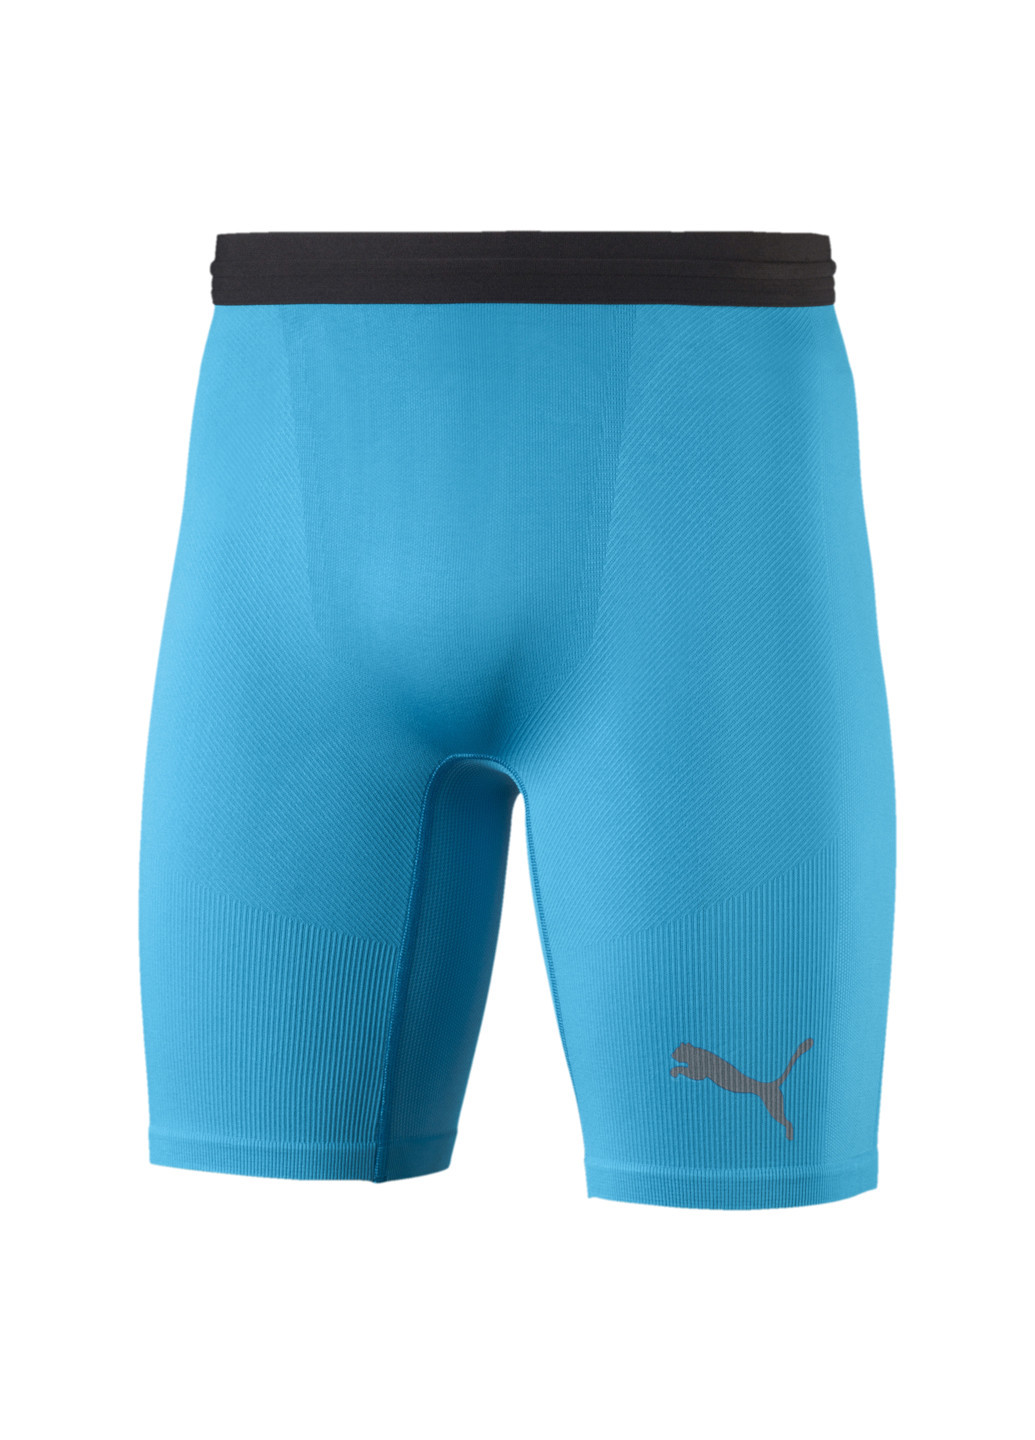 Футбольные лосины Football Bodywear Men’s Baselayer Short Tights Puma однотонные синие спортивные нейлон, полиэстер, эластан